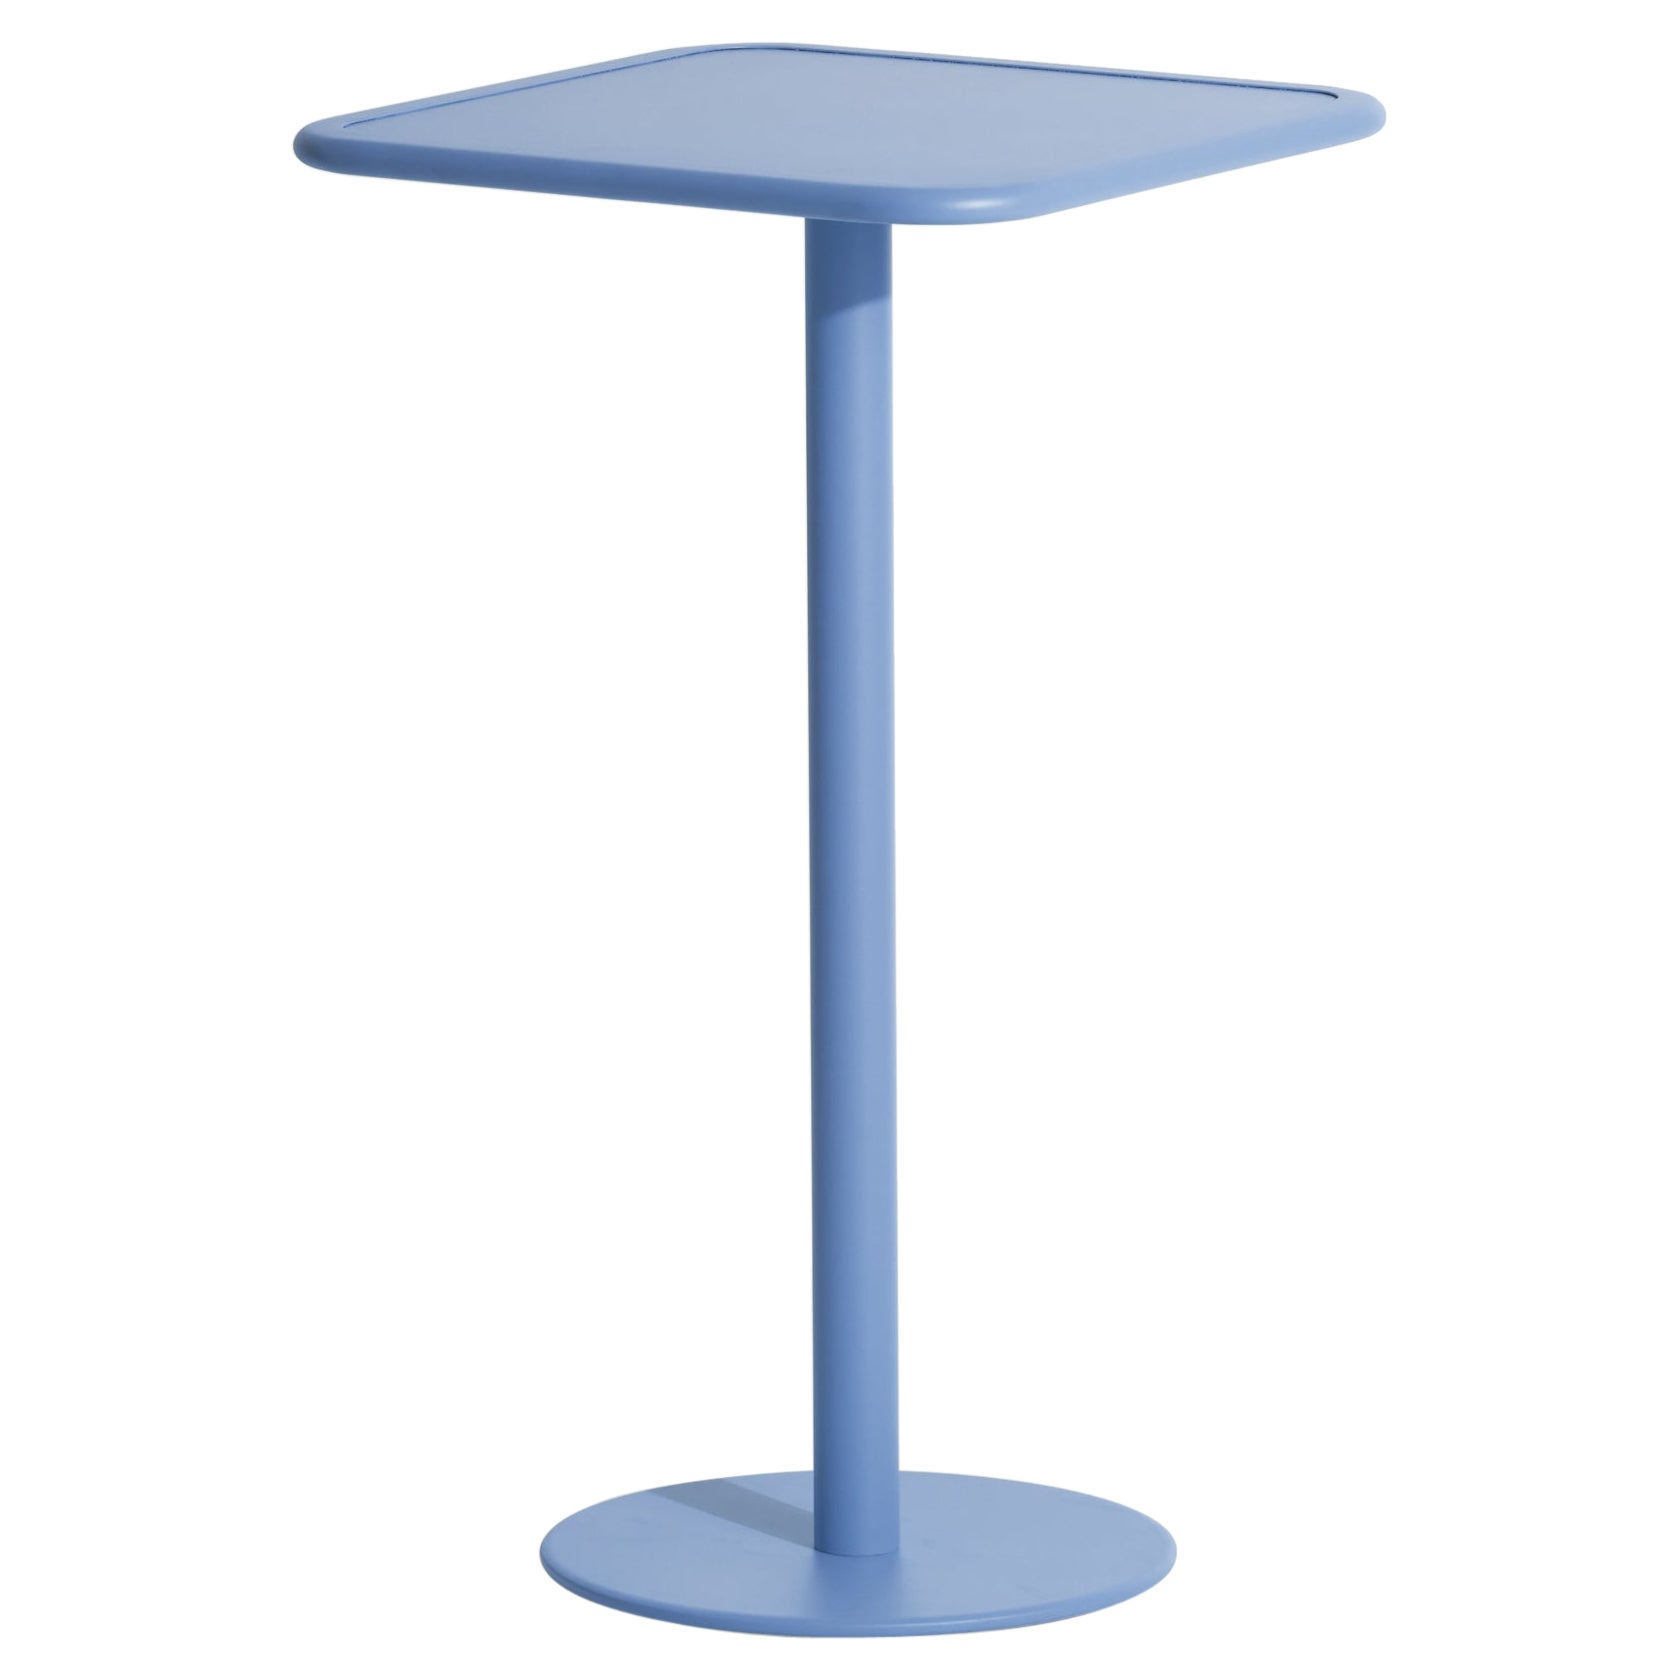 Petite table haute carrée Week- End en aluminium bleu azur, 2017